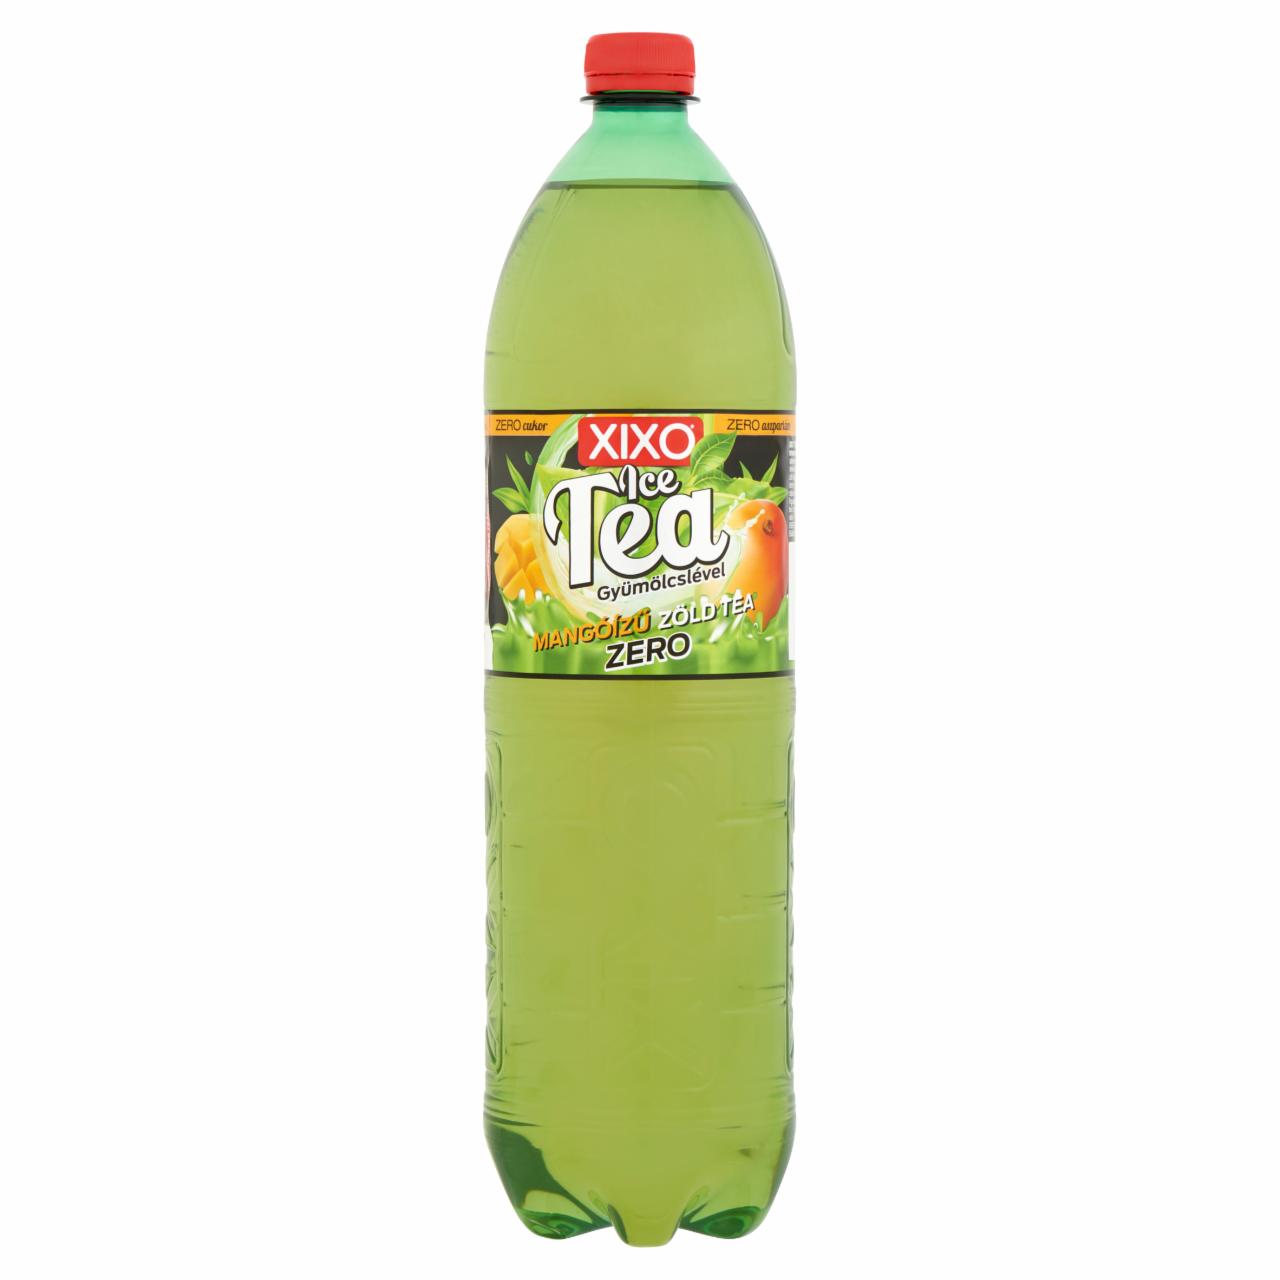 Képek - XIXO Ice Tea Zero cukormentes, mangóízű zöld tea gyümölcslével, édesítőszerekkel 1,5 l